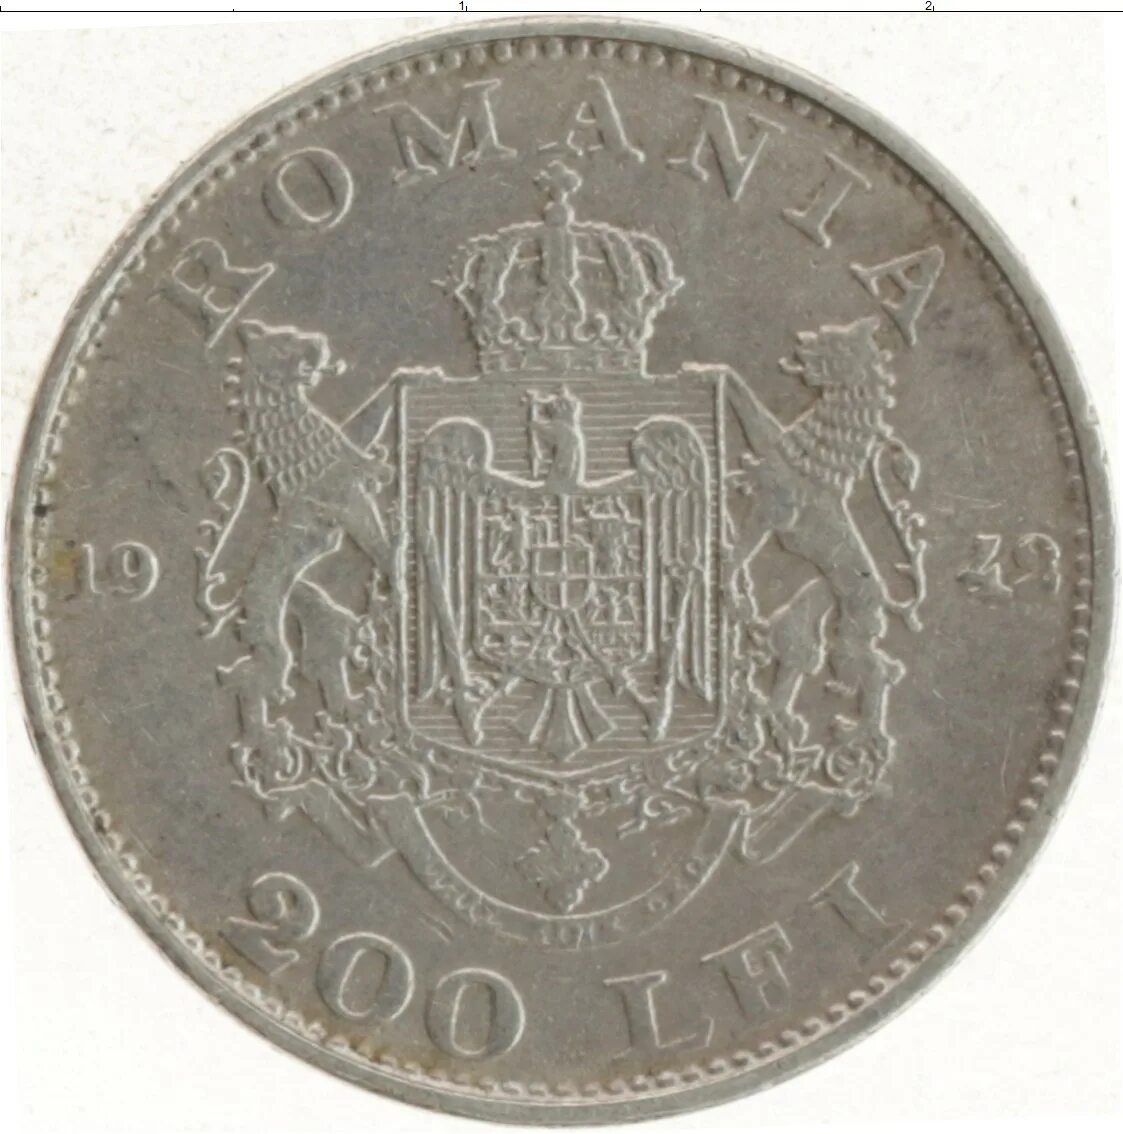 Румынский лей манет. 200 Лей. Румынский лей железные. Монеты Румынии 1963.